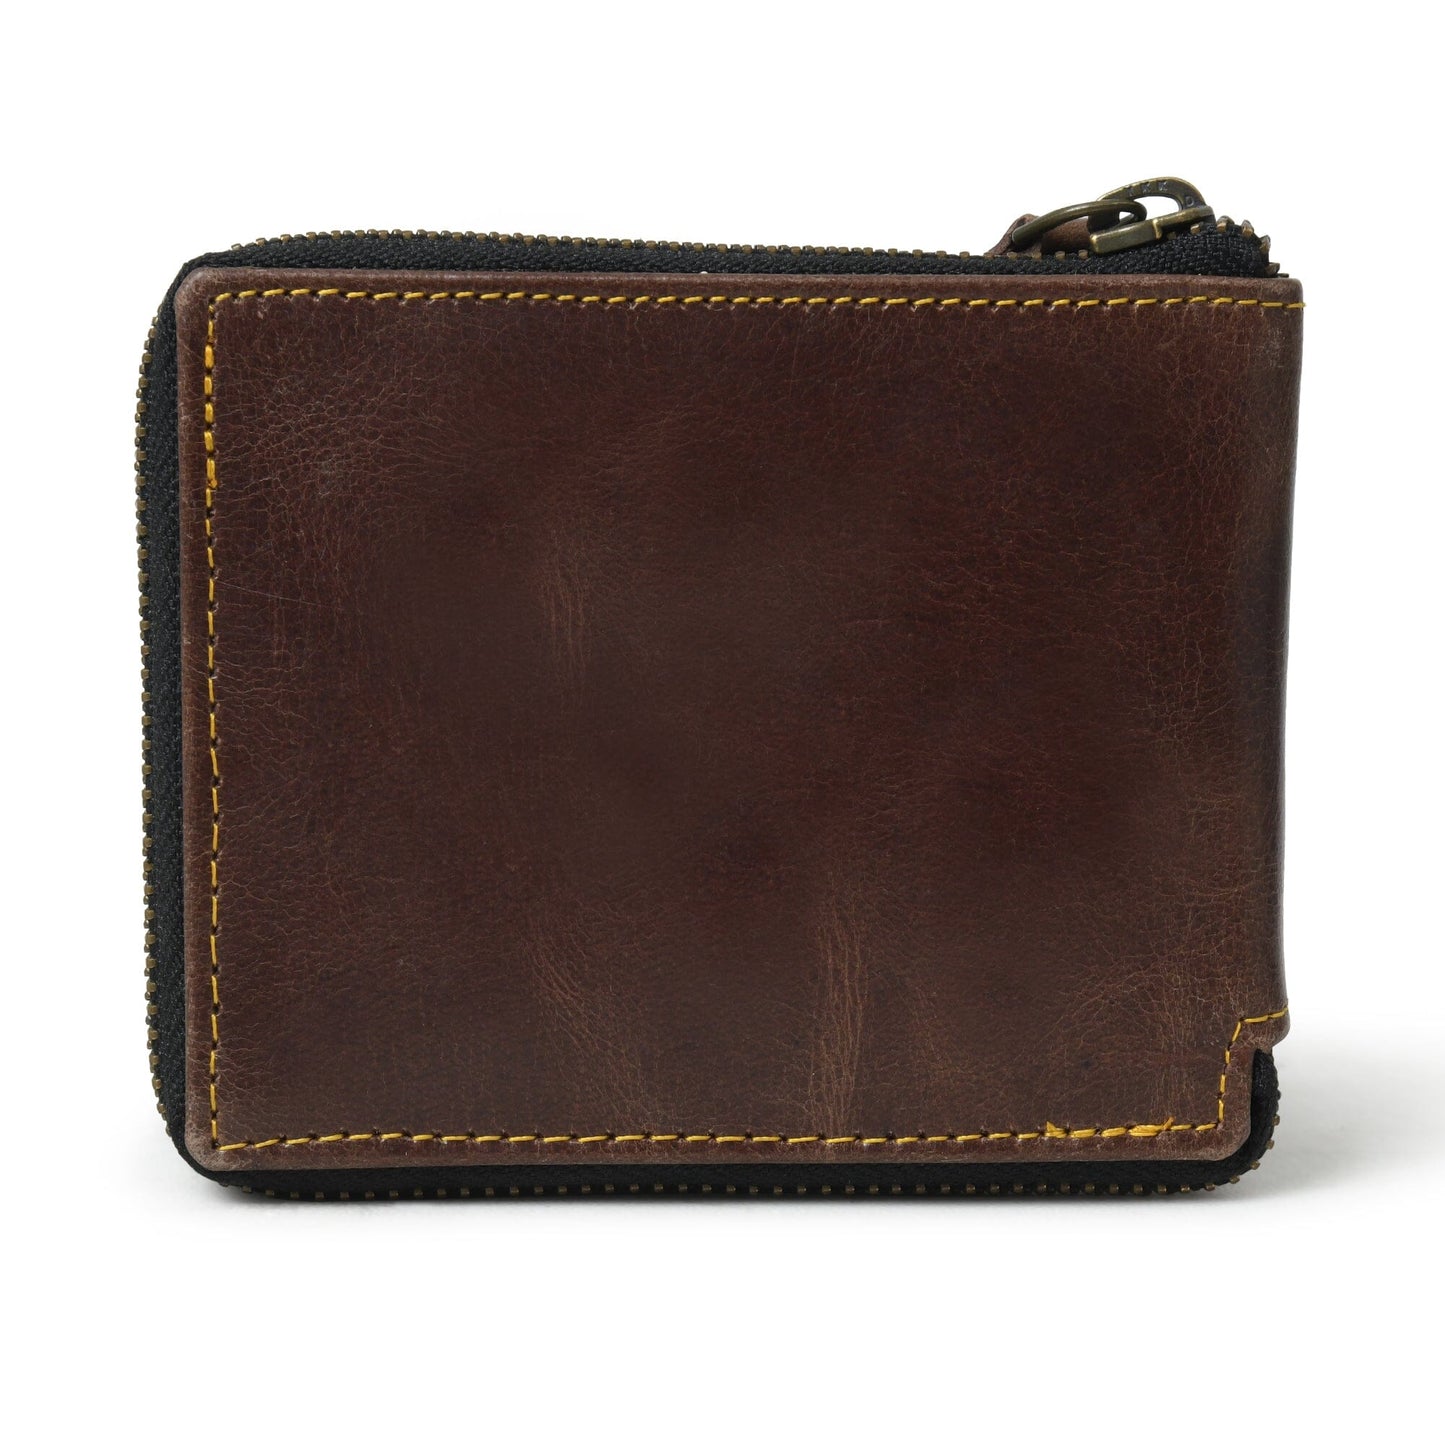 Adams Bi-Fold Wallet- Walnut Brown - The Tool Store